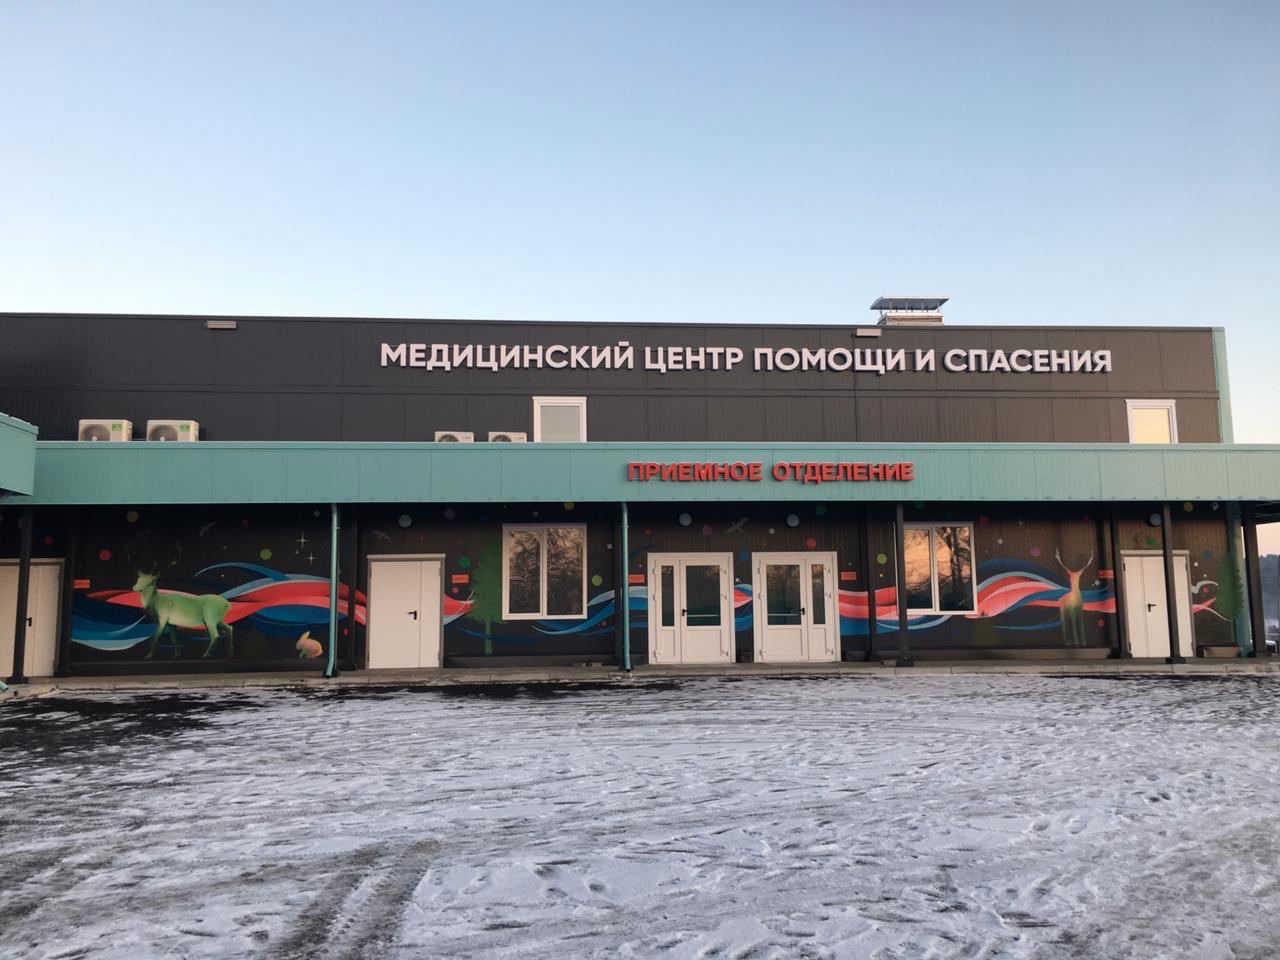 Медцентр для лечения внебольничной пневмонии открылся на Урале